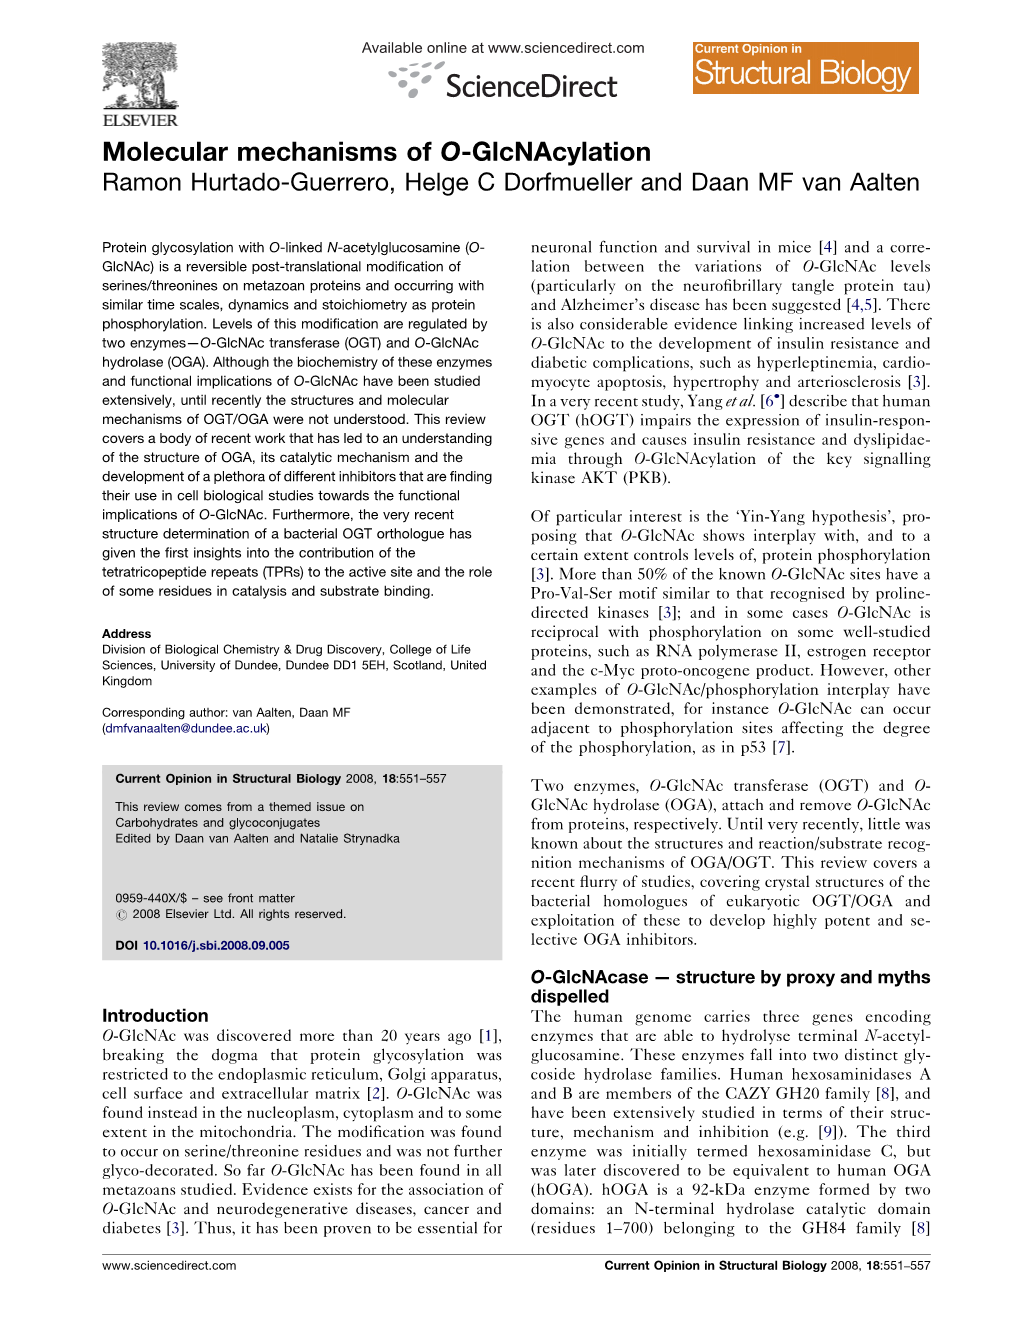 Molecular Mechanisms of O-Glcnacylation Ramon Hurtado-Guerrero, Helge C Dorfmueller and Daan MF Van Aalten